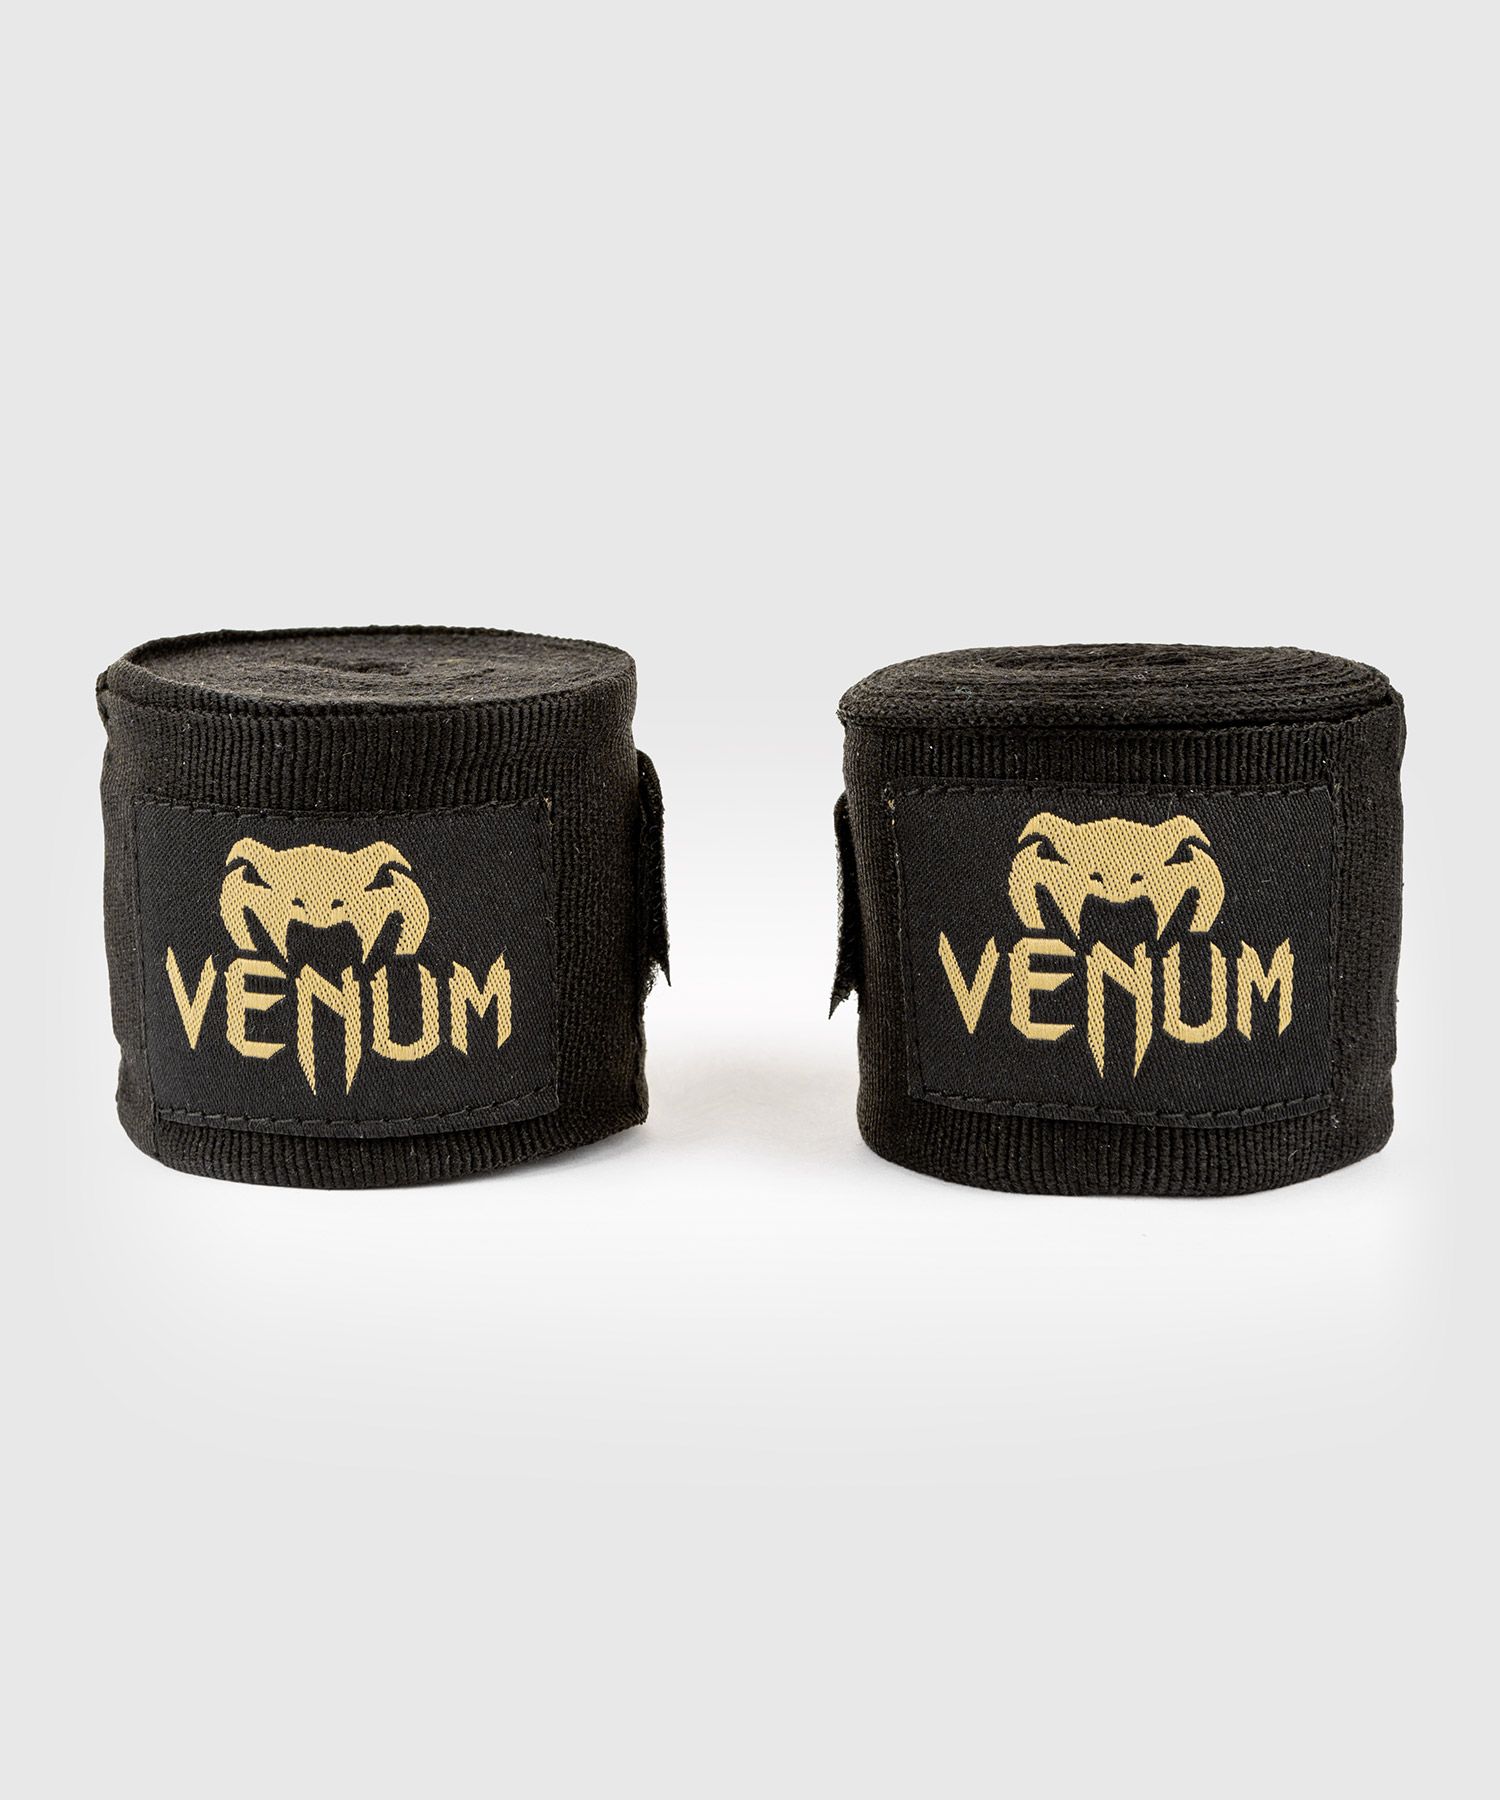 Venum Kontact ボクシングハンドラップ - 4.5m - ブラック/ゴールド